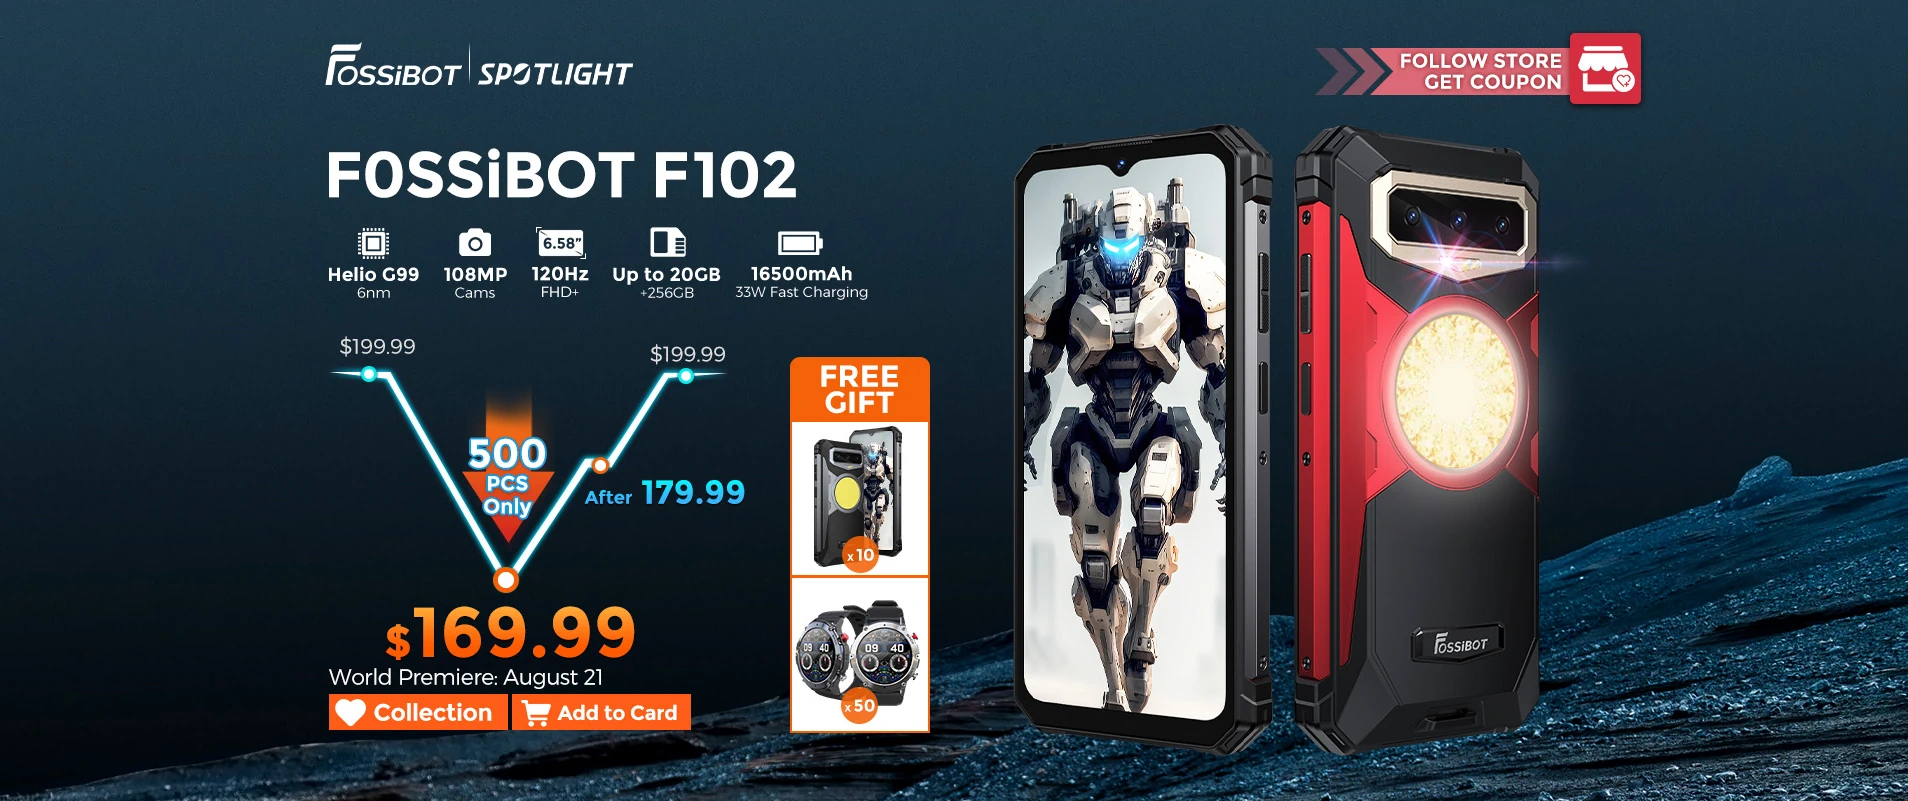 Распродажа смартфонов Fossibot F102 со скидкой